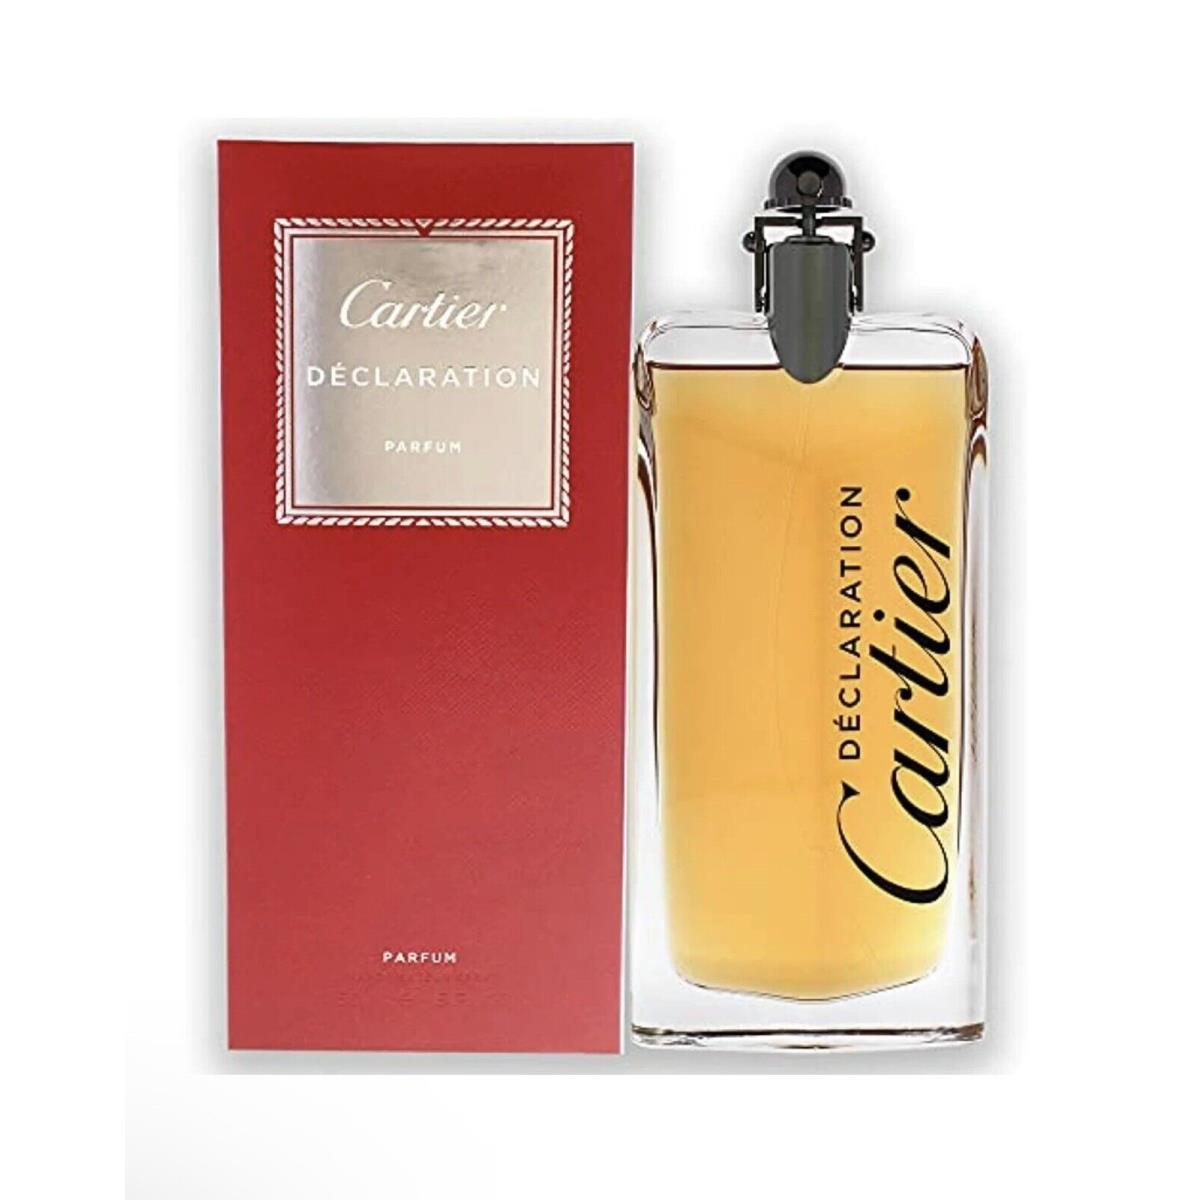 Cartier Declaration 5 oz Men Parfum Concentrated Spray